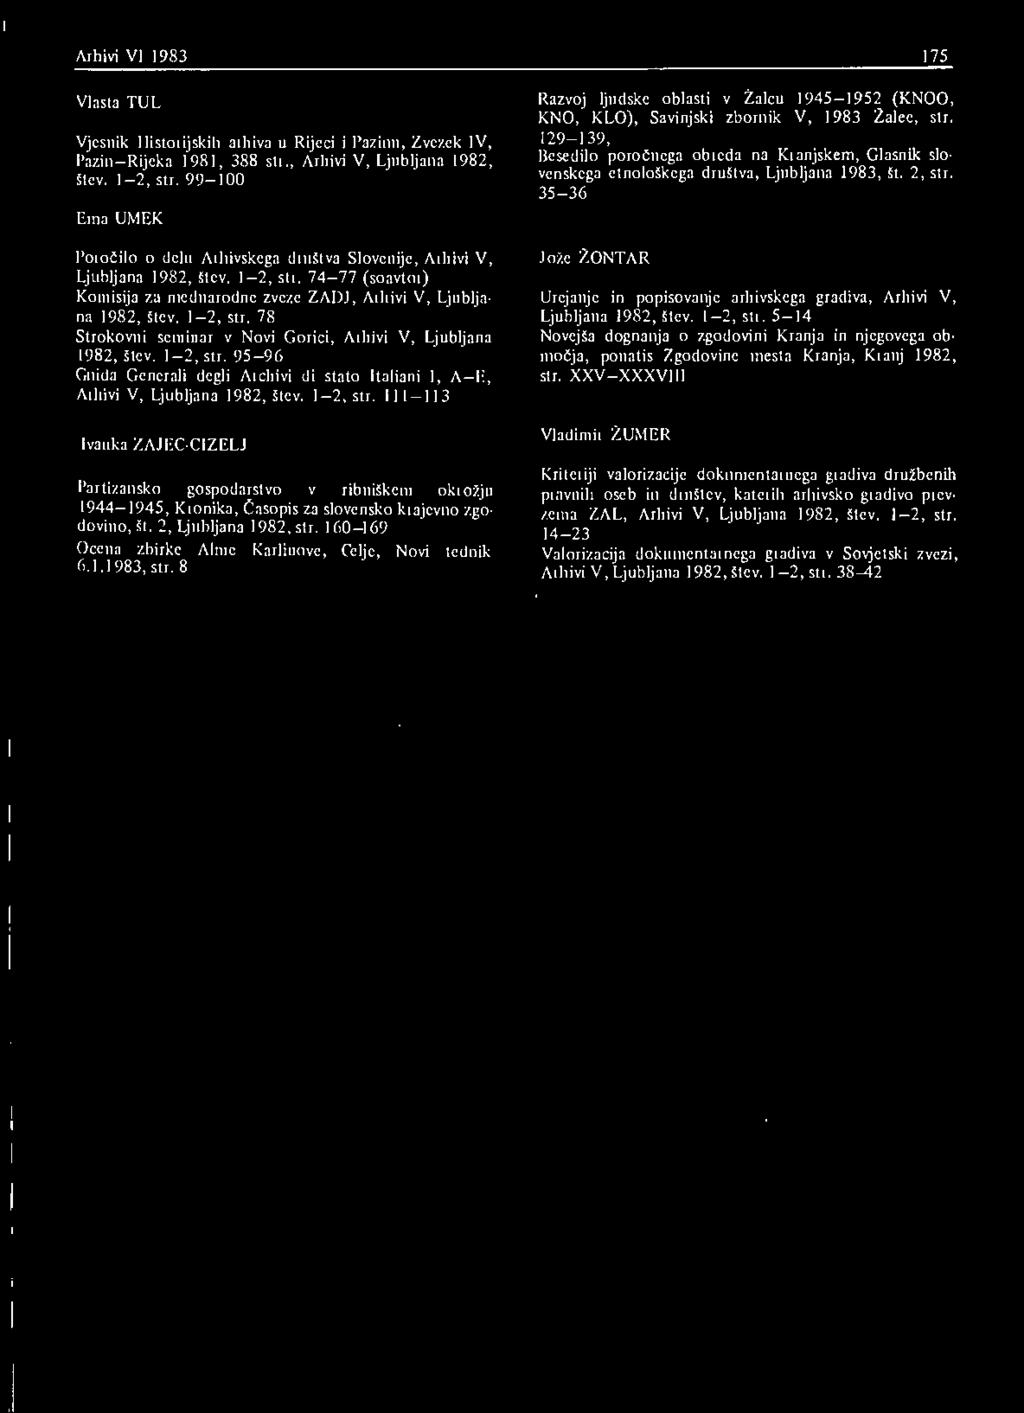 1-2, str. 95-96 Guida Generali degli Archivi di stato italiani 1, A II, Arhivi V, Ljubljana 1982, štev. 1-2, str.